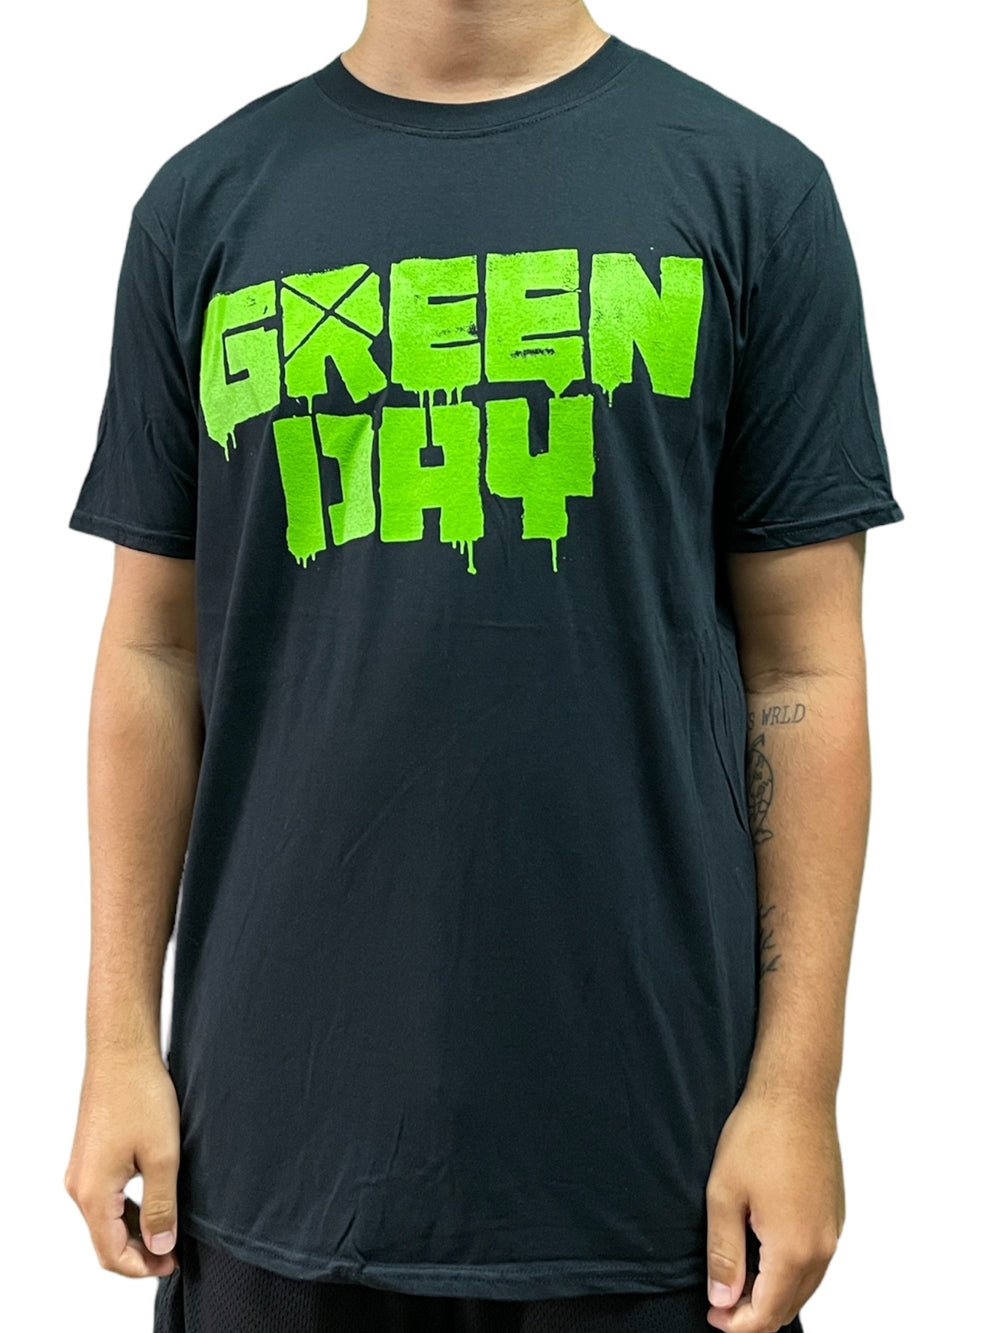 Green Day Logo 21st Century Breakdown (BLACK) Official Unisex T Shirt Brand New Various Sizes